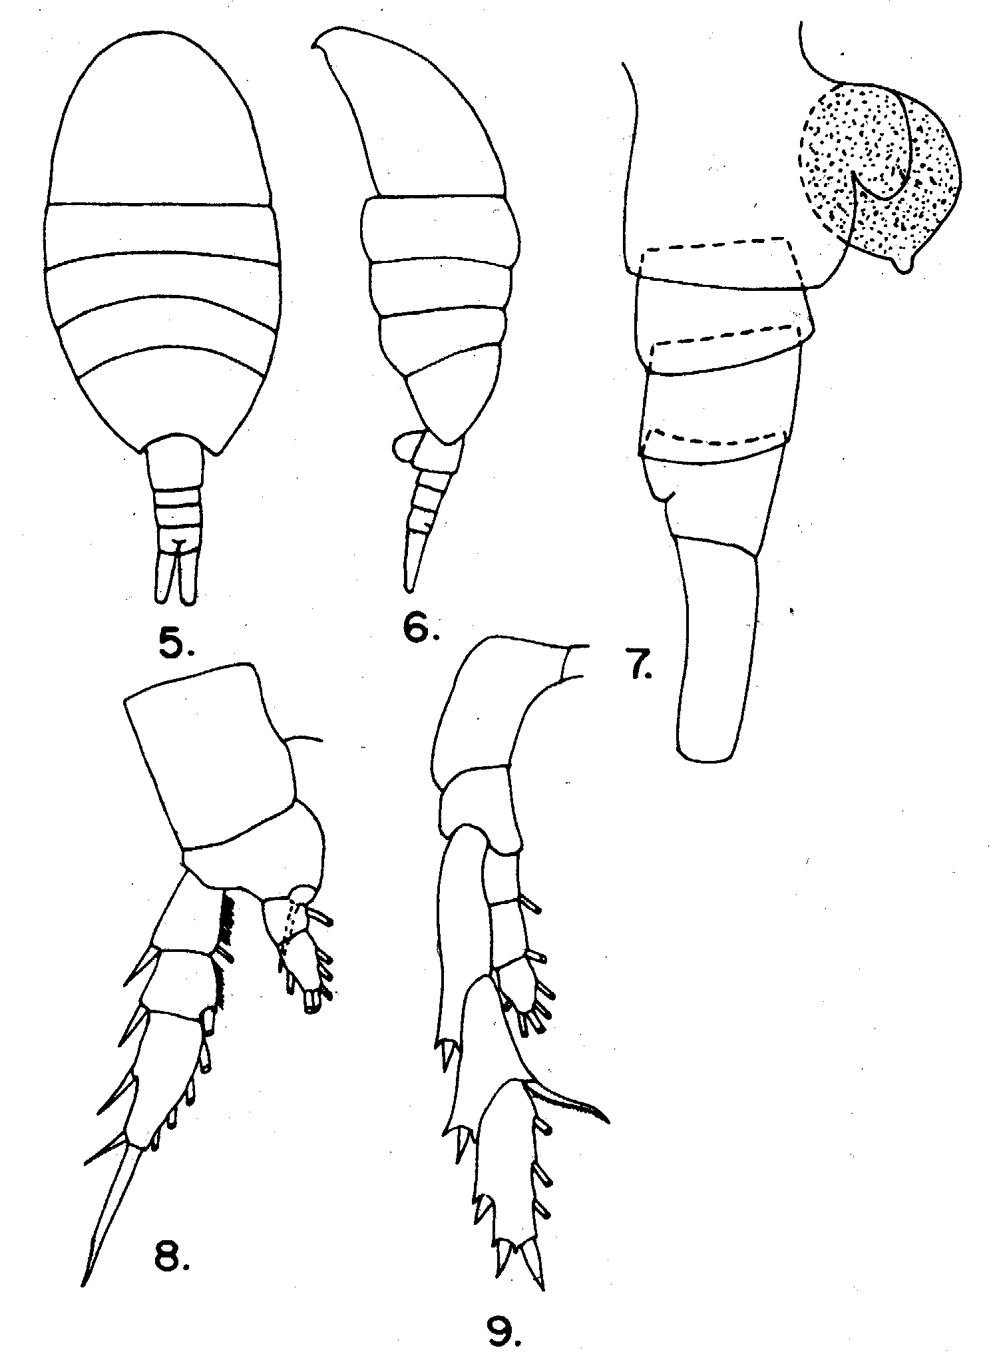 Espèce Lucicutia gaussae - Planche 10 de figures morphologiques